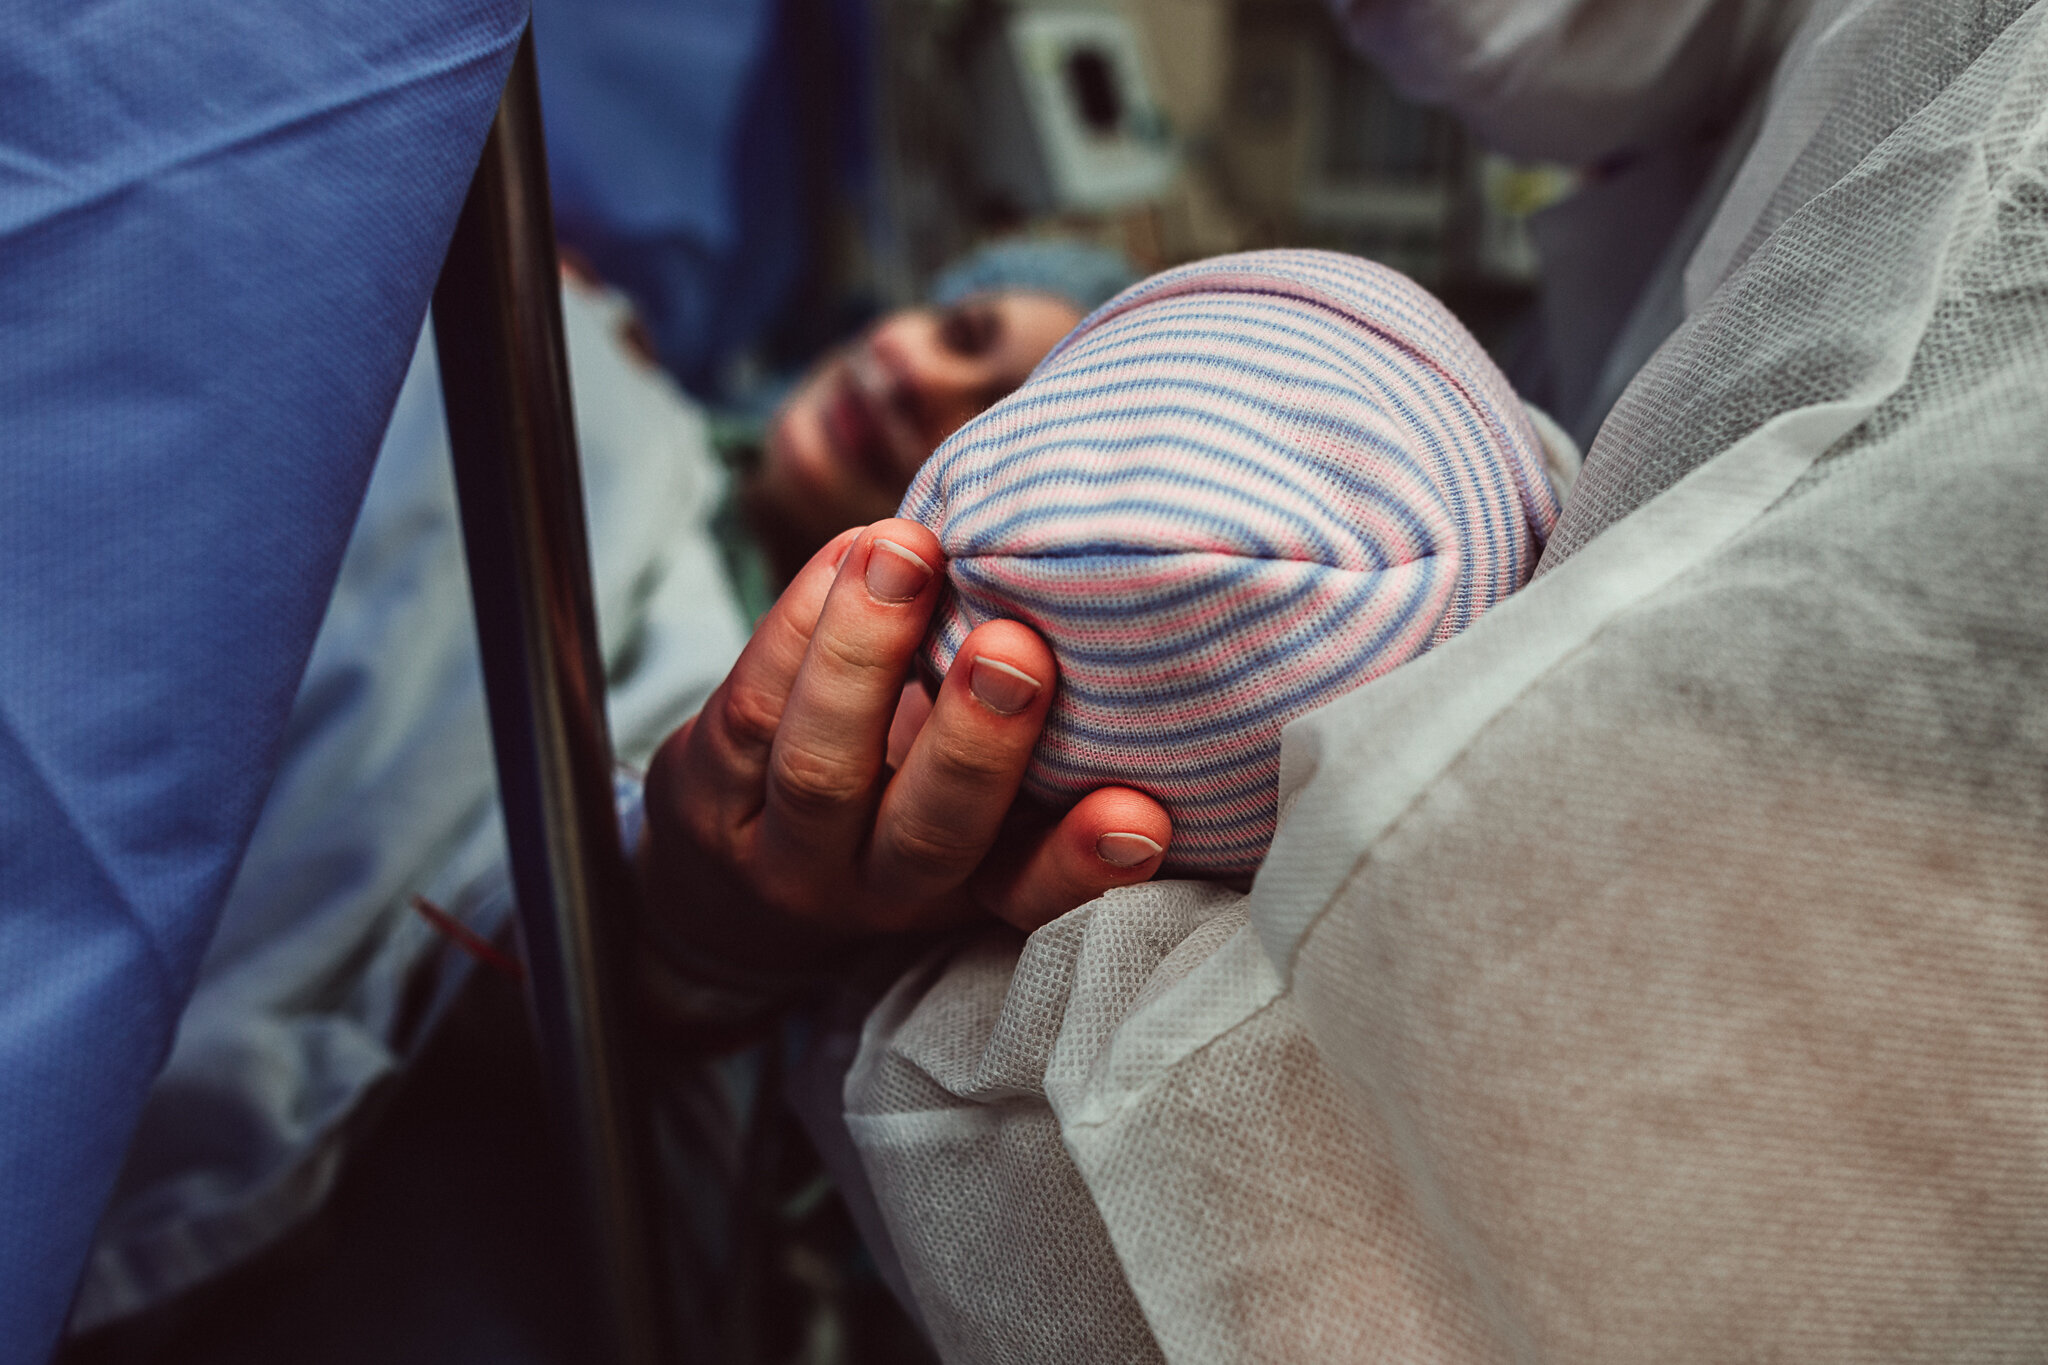 cesarean-birth-postpartum-maggie-williams-3913.jpg